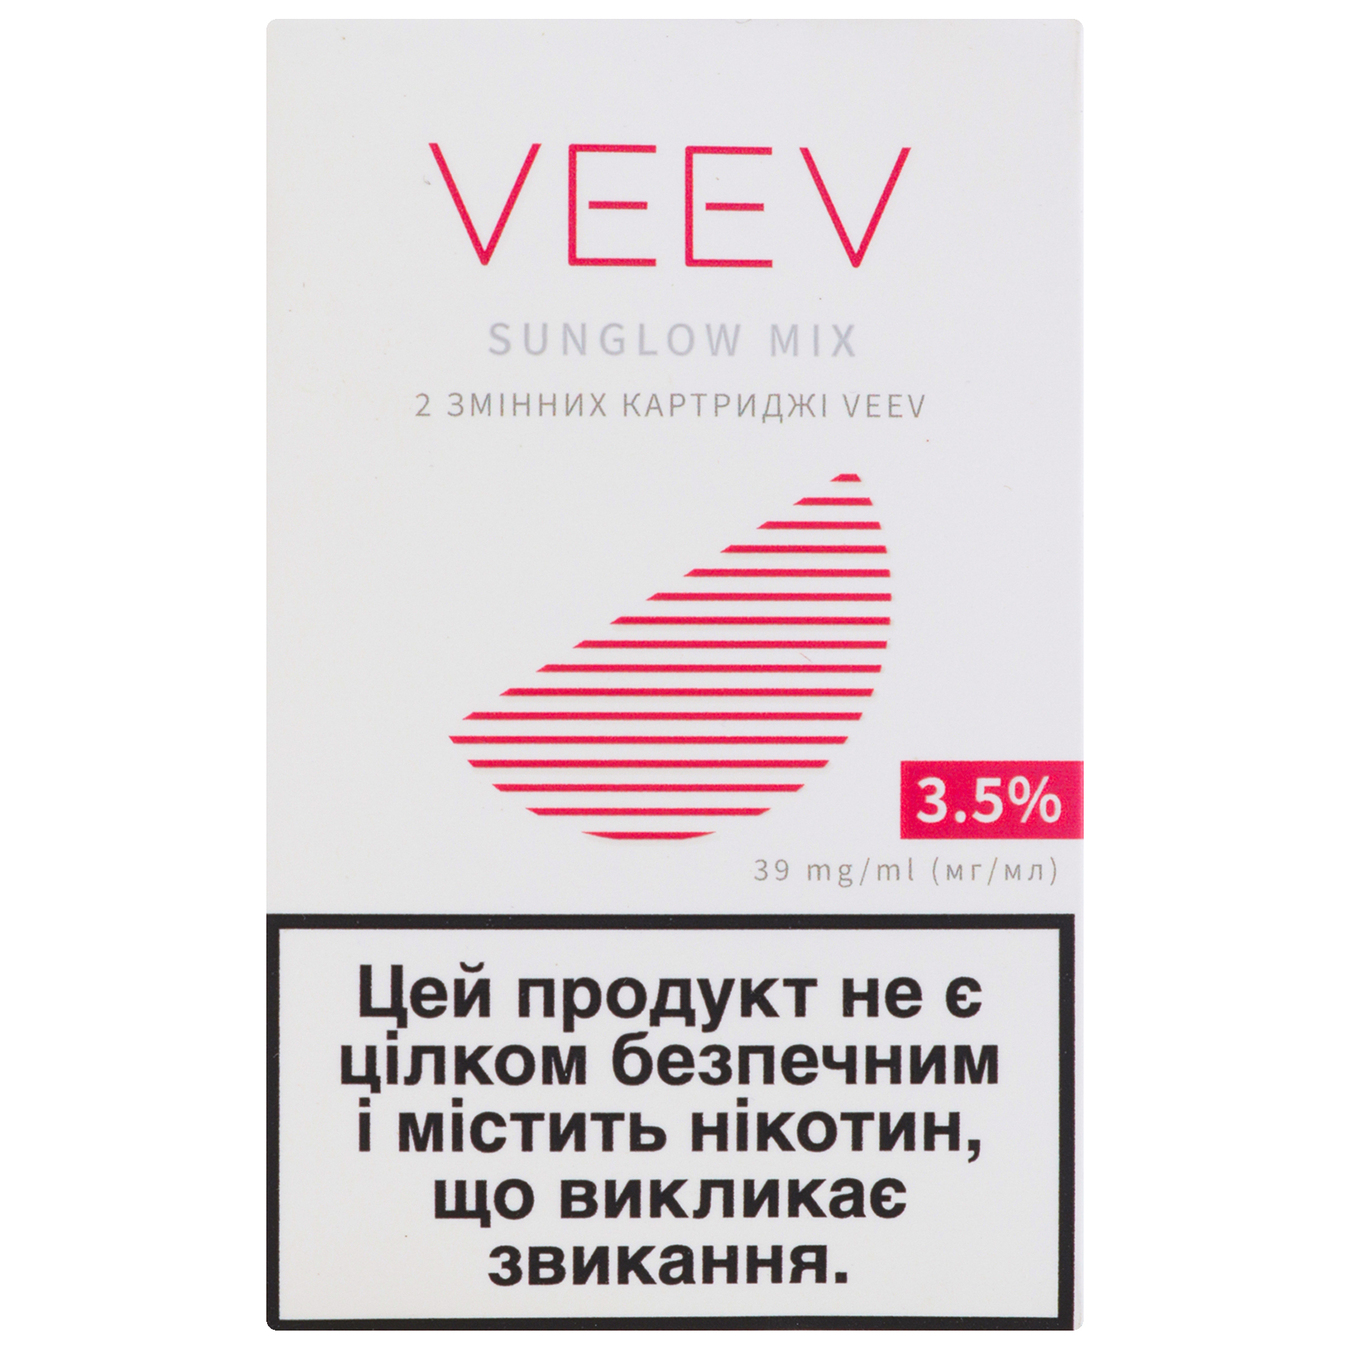 Картридж змінний Veev Sunglov mix 3,5% (ціна вказана без акцизу)